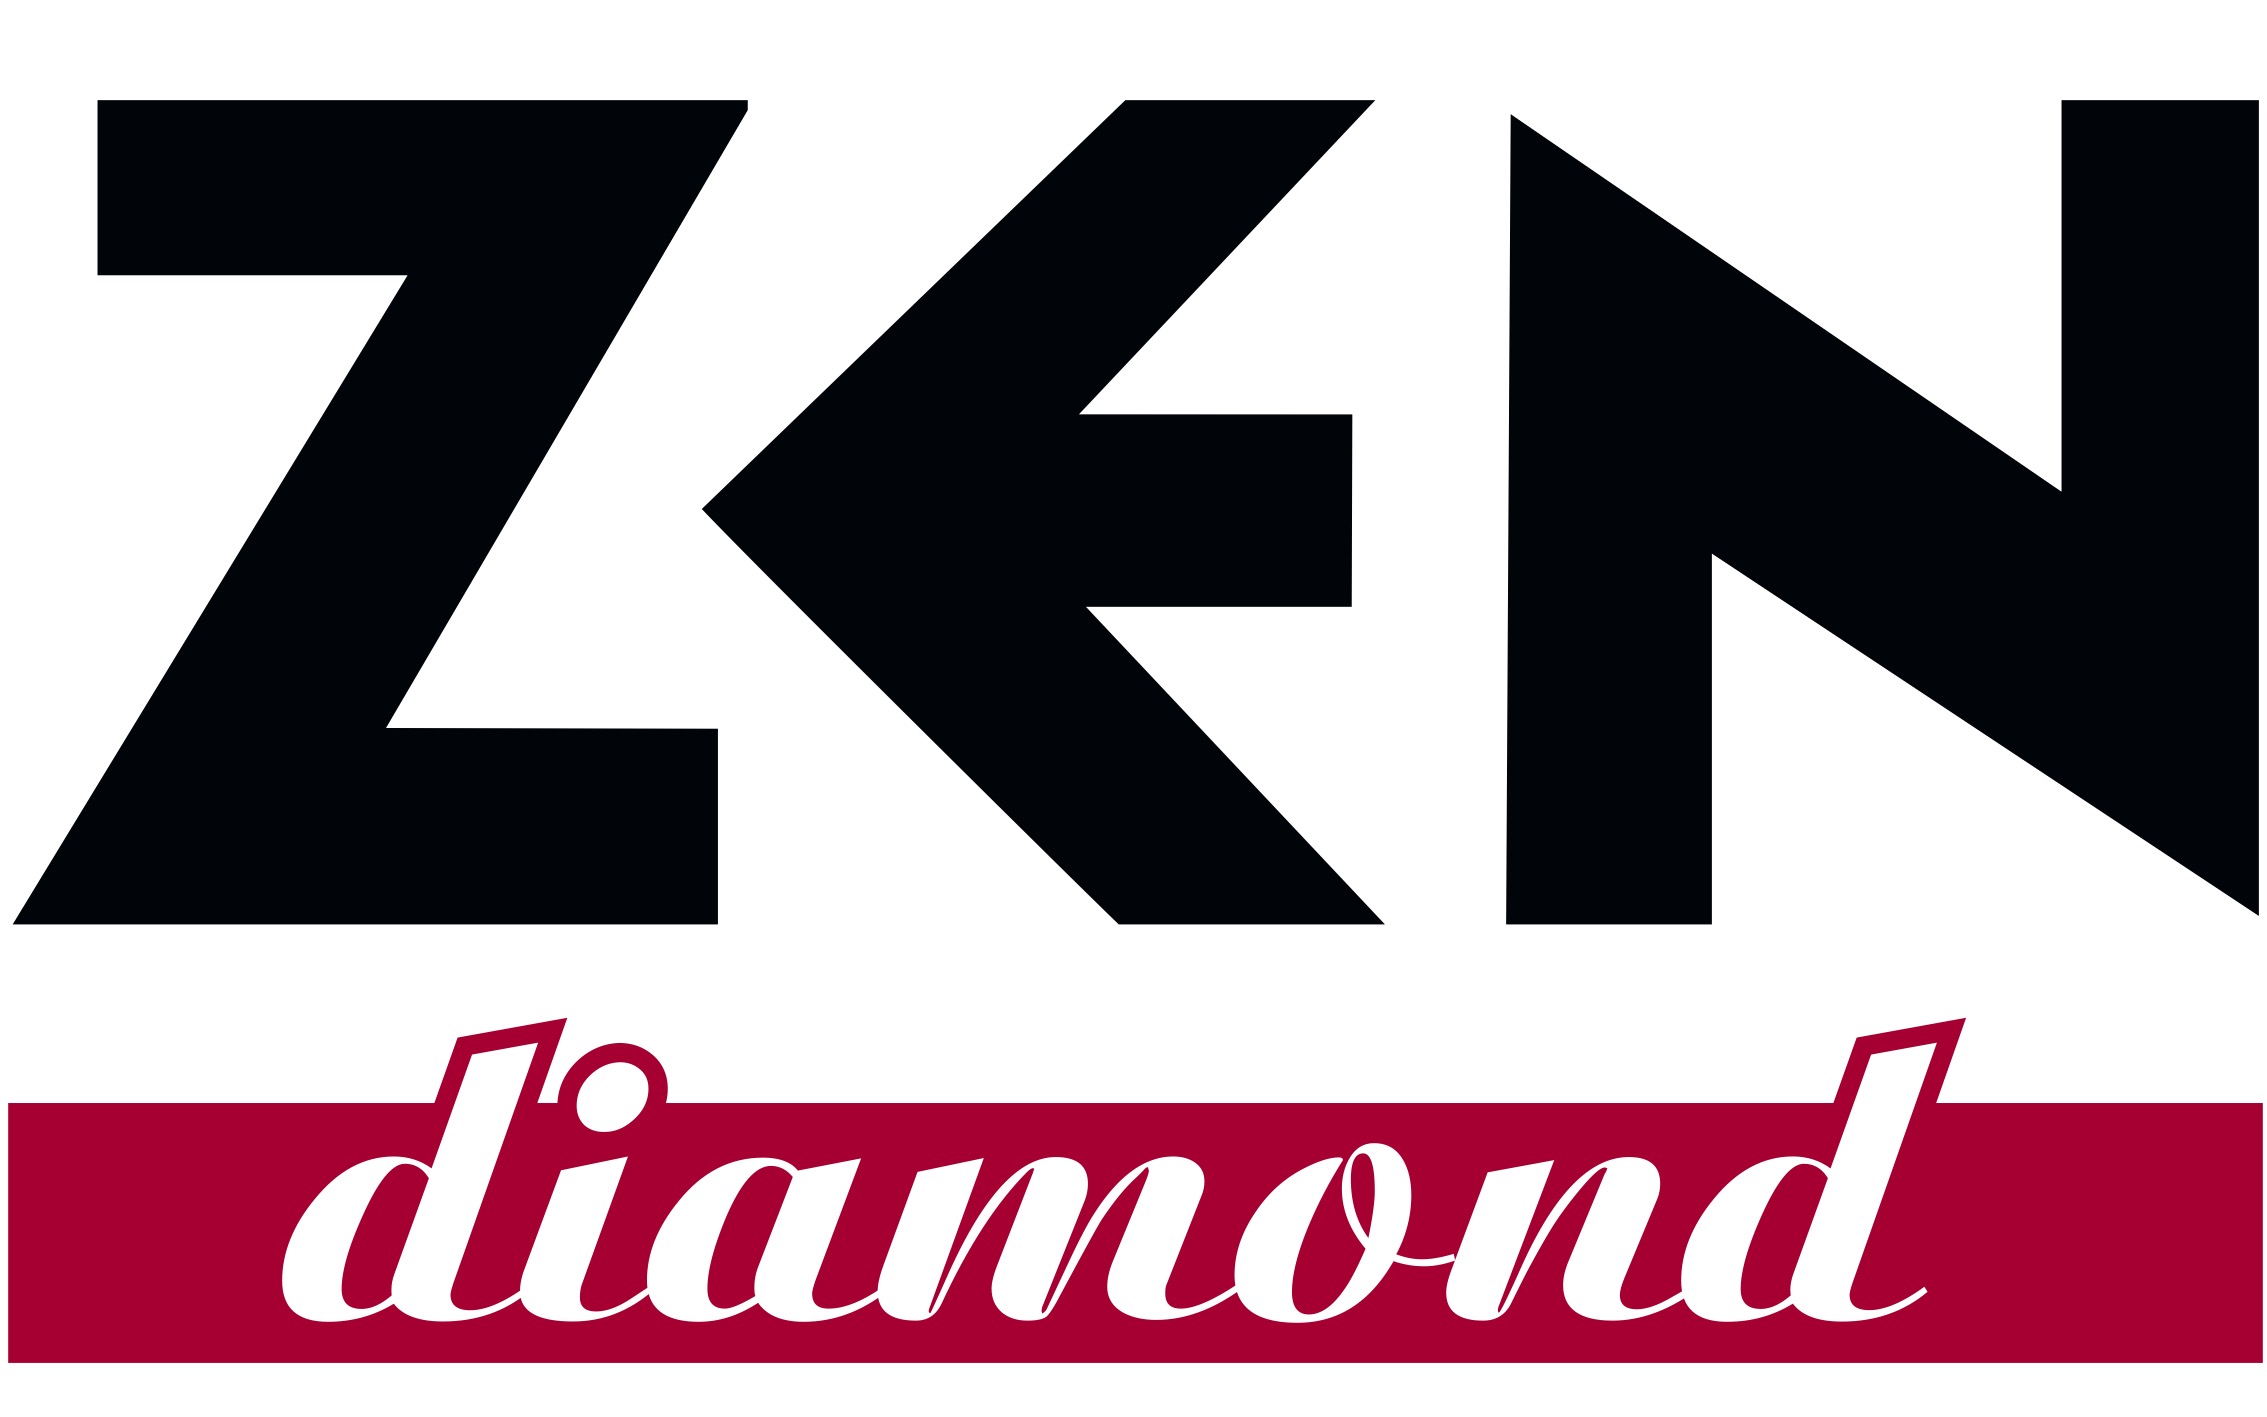 Zen Diamond Logo